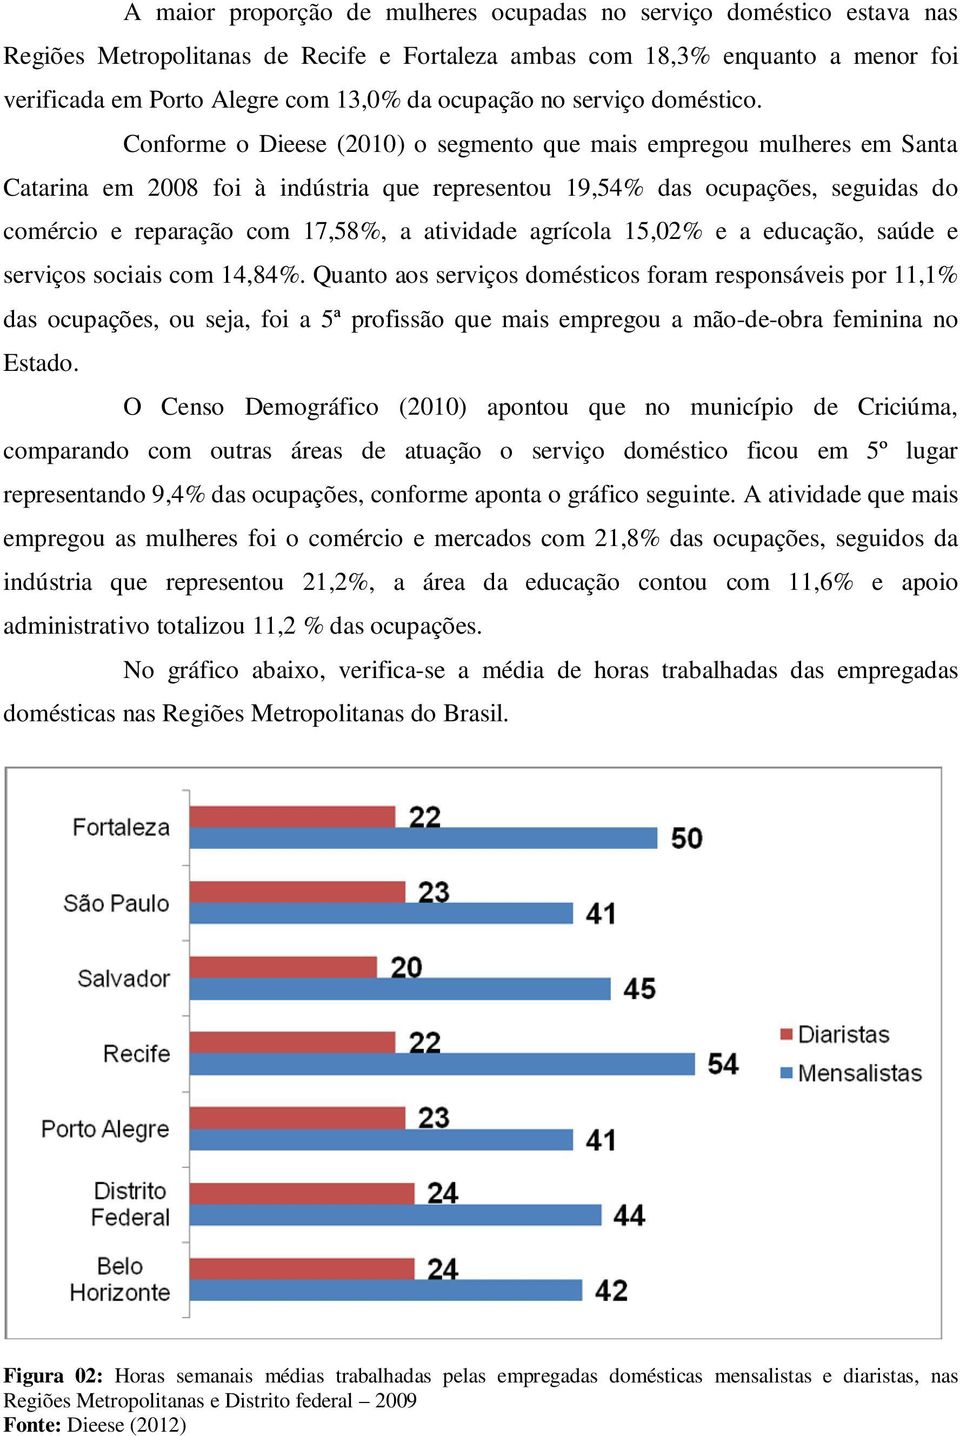 Conforme o Dieese (2010) o segmento que mais empregou mulheres em Santa Catarina em 2008 foi à indústria que representou 19,54% das ocupações, seguidas do comércio e reparação com 17,58%, a atividade